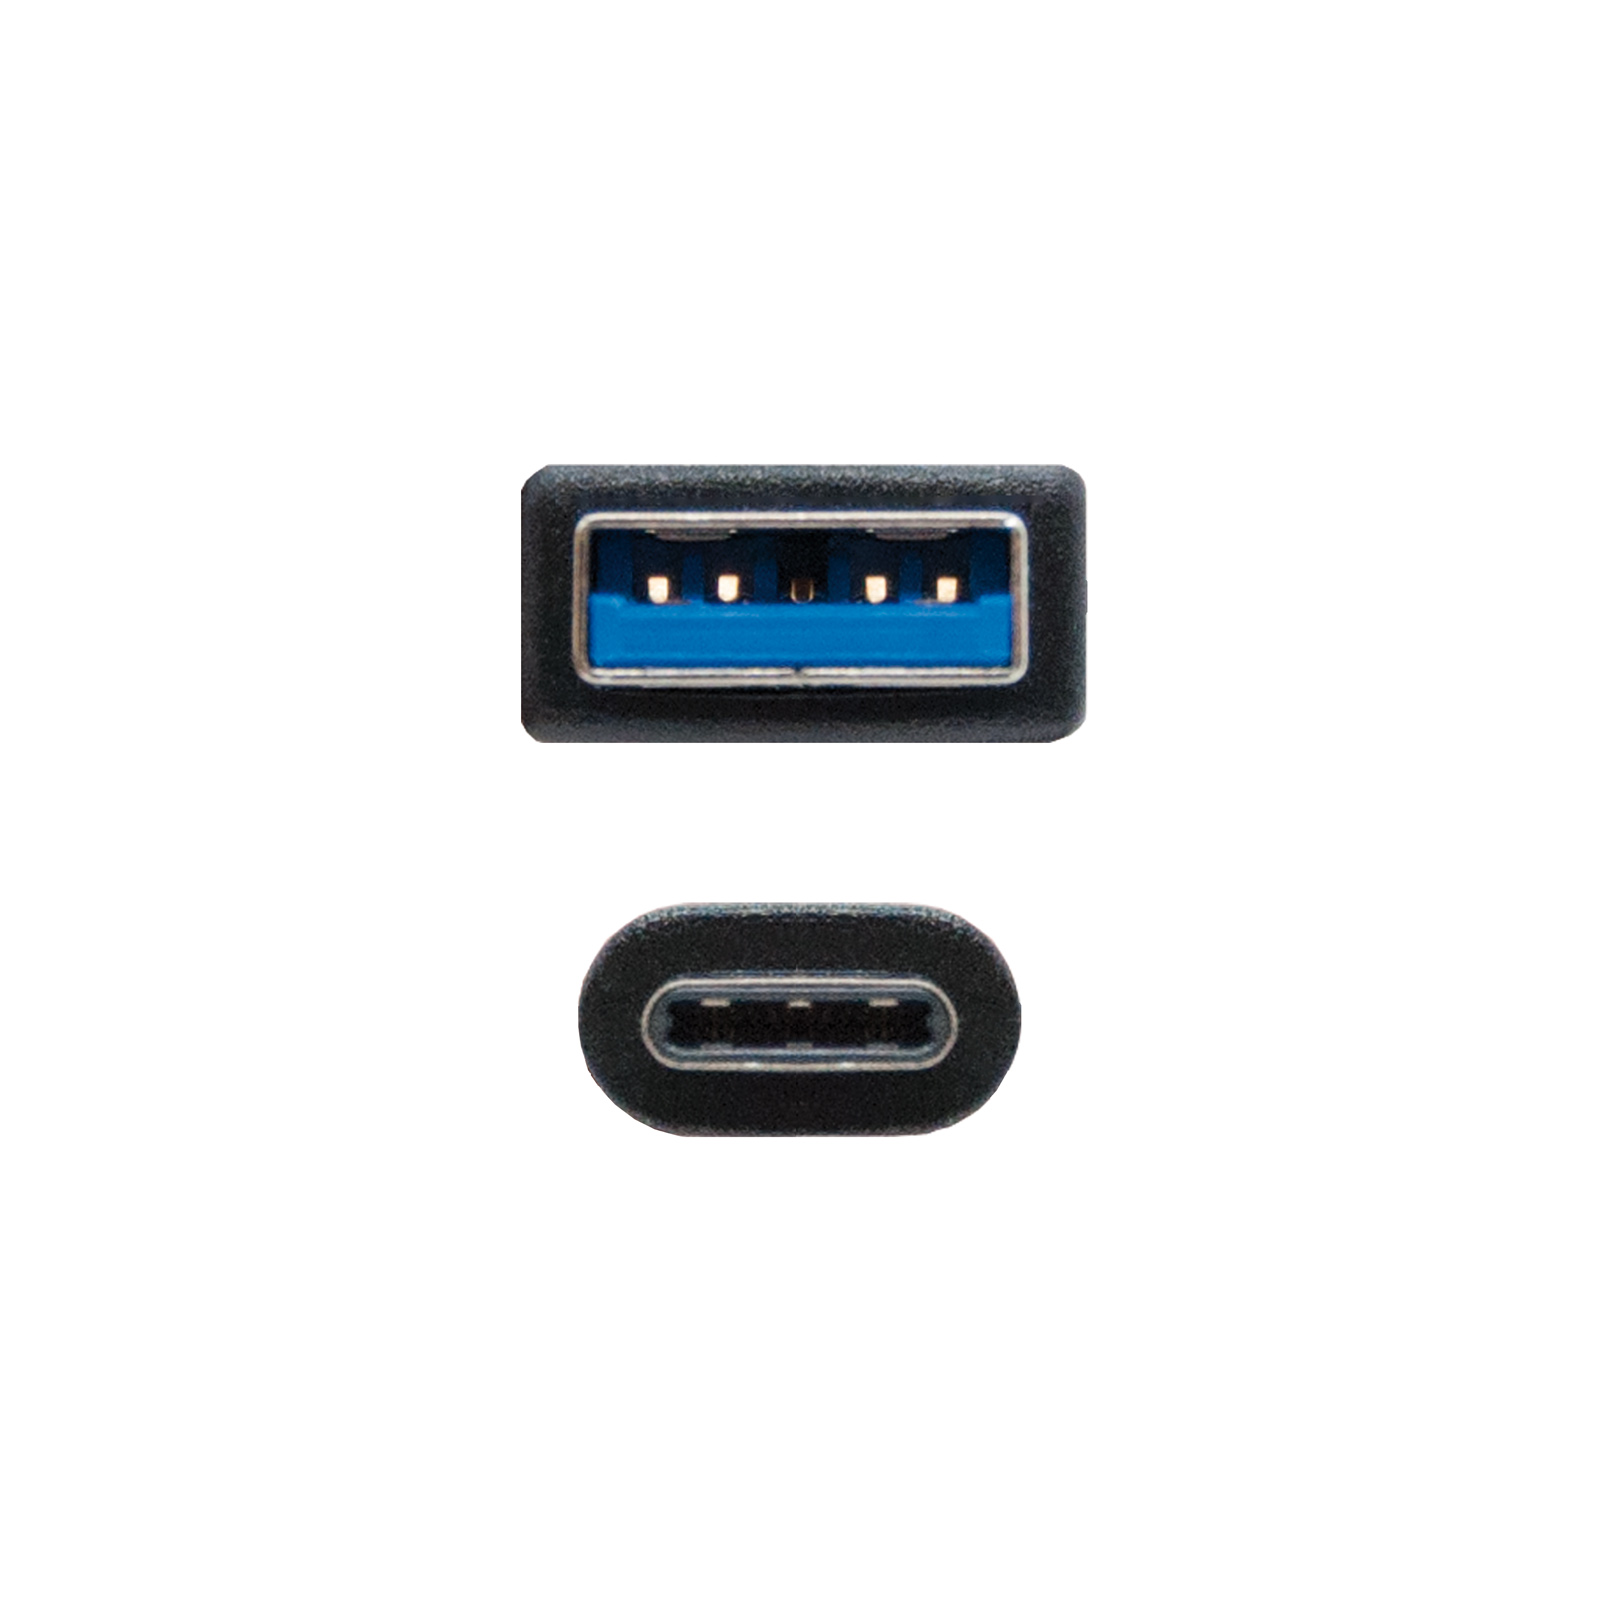 Câble Nanocable USB 3.1 Gen2 10Gbps 3A USB-C/MA/M 2m - Couleur Noir